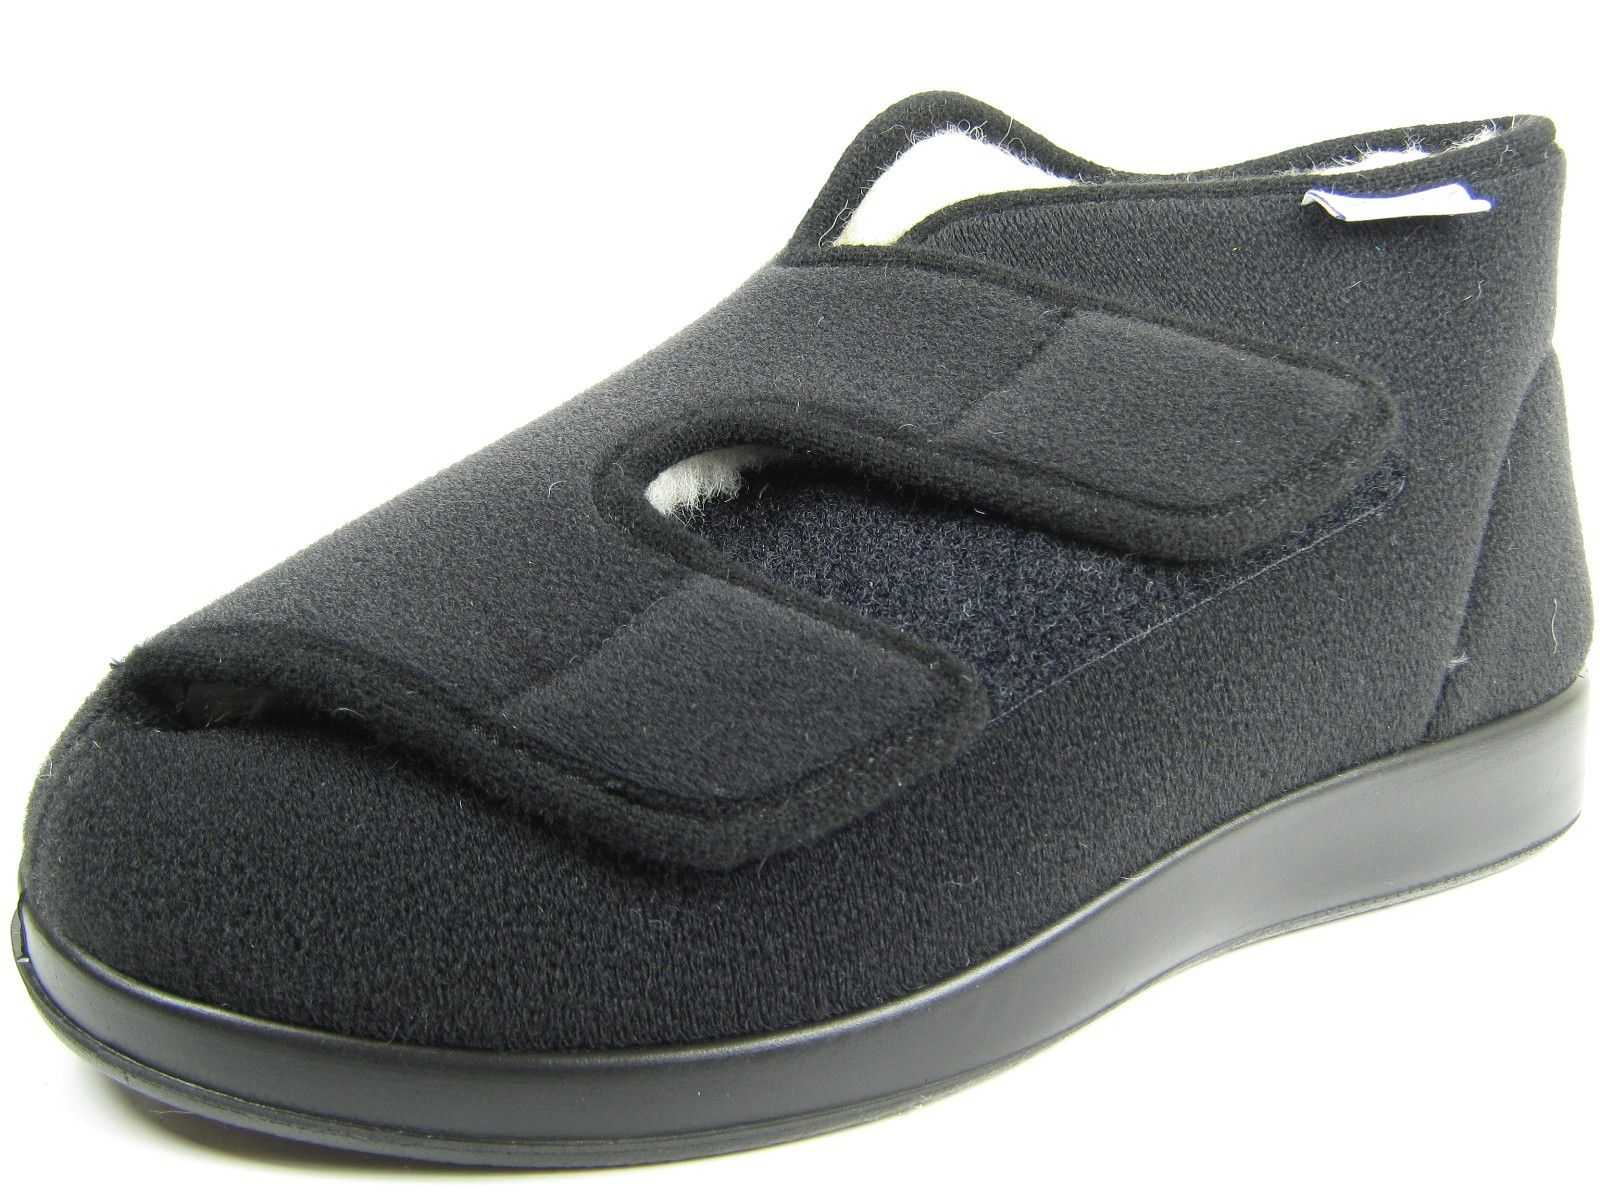 Schuh von Varomed, 40